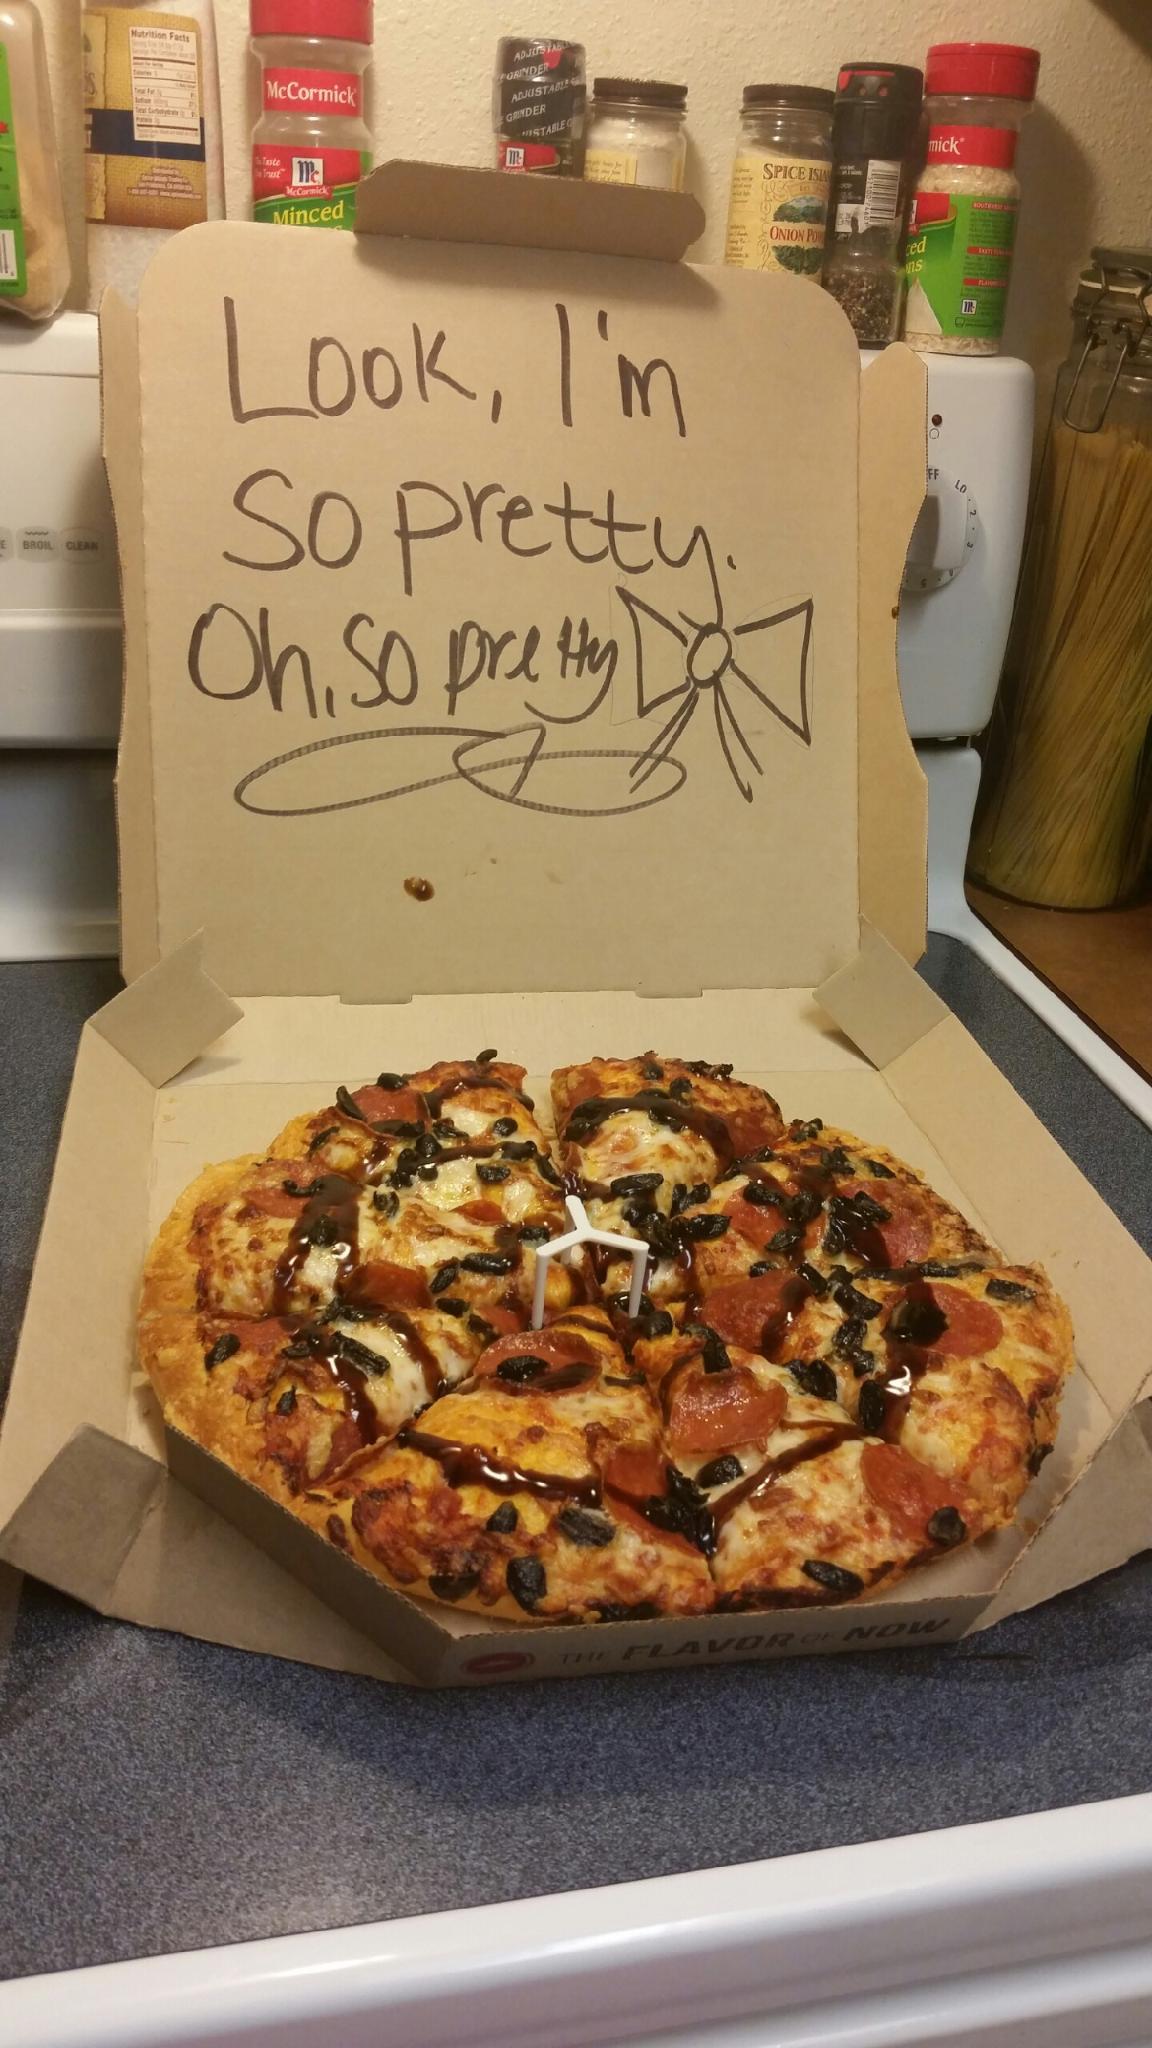 told pizza Hut to make my pizza pretty - meme